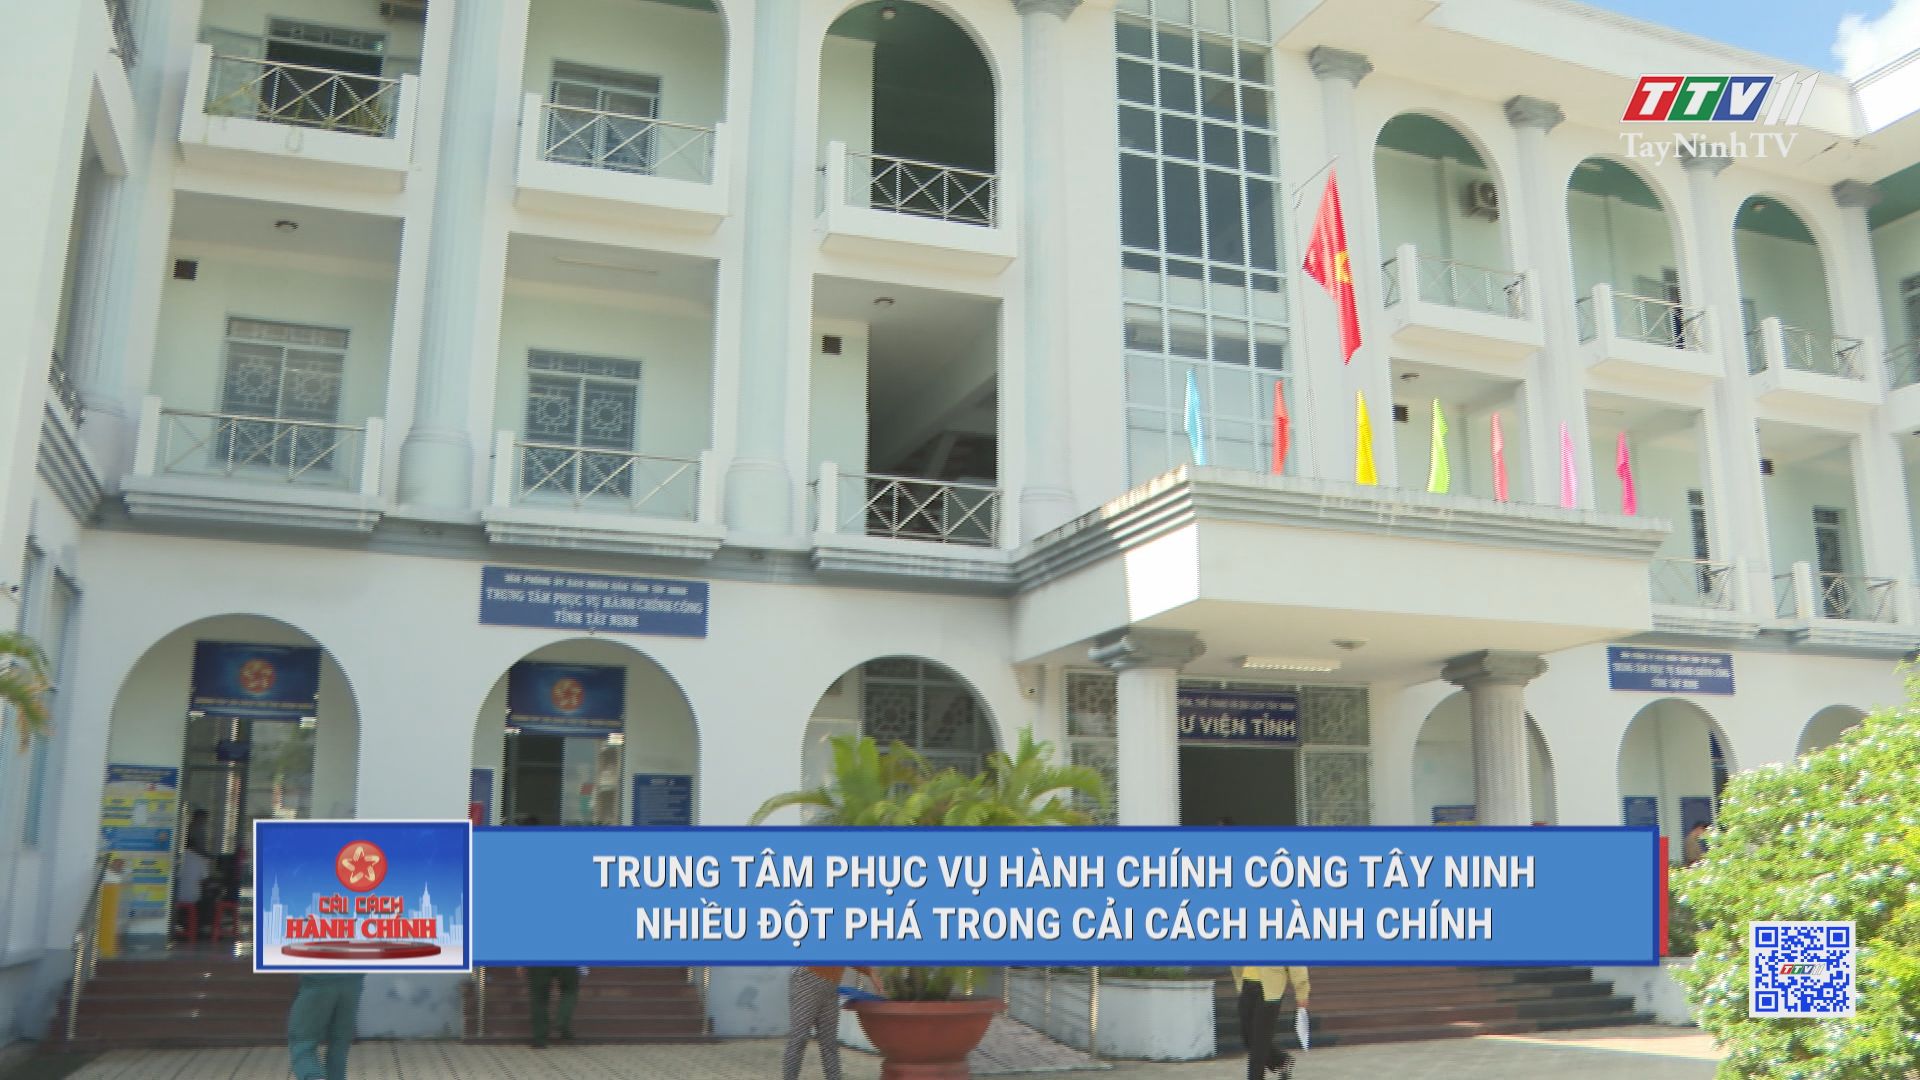 Trung tâm phục vụ hành chính công Tây Ninh nhiều đột phá trong cải cách hành chính | CẢI CÁCH HÀNH CHÍNH | TayNinhTV